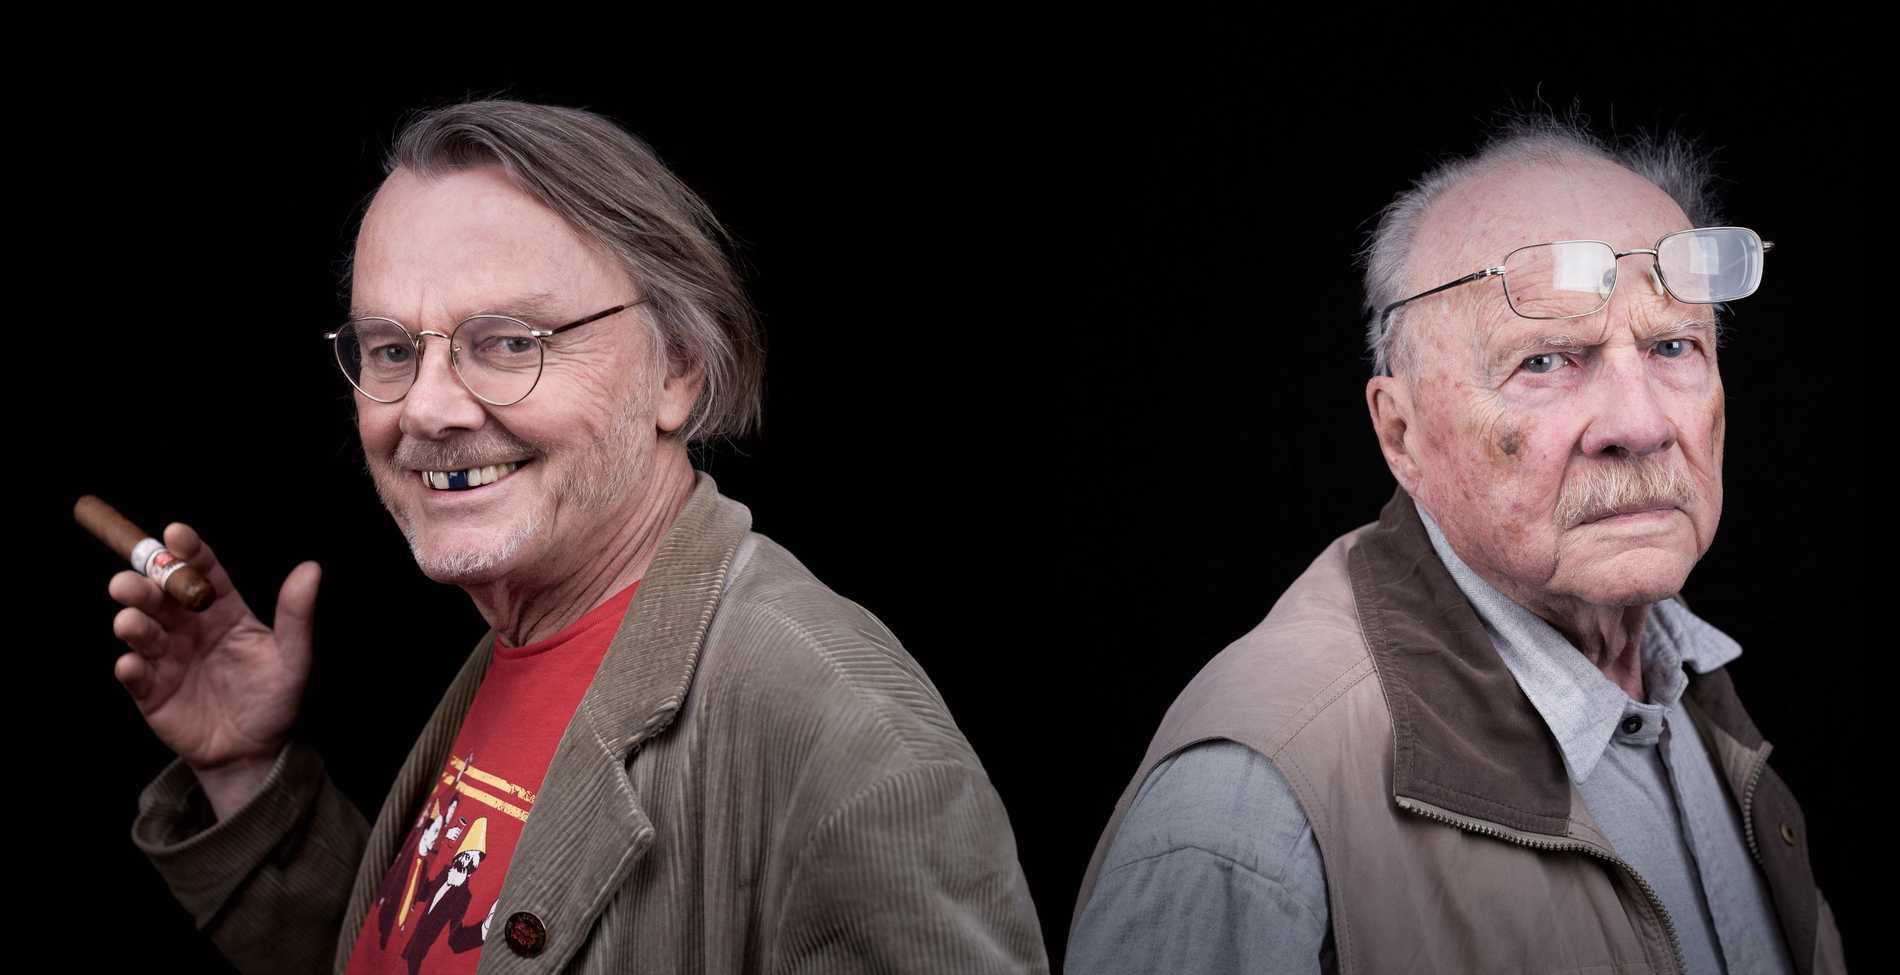 Lasse Diding och Jan Myrdal, duon som skildras i den nya dokumentärfilmen ”I väntan på Jan Myrdals död”.